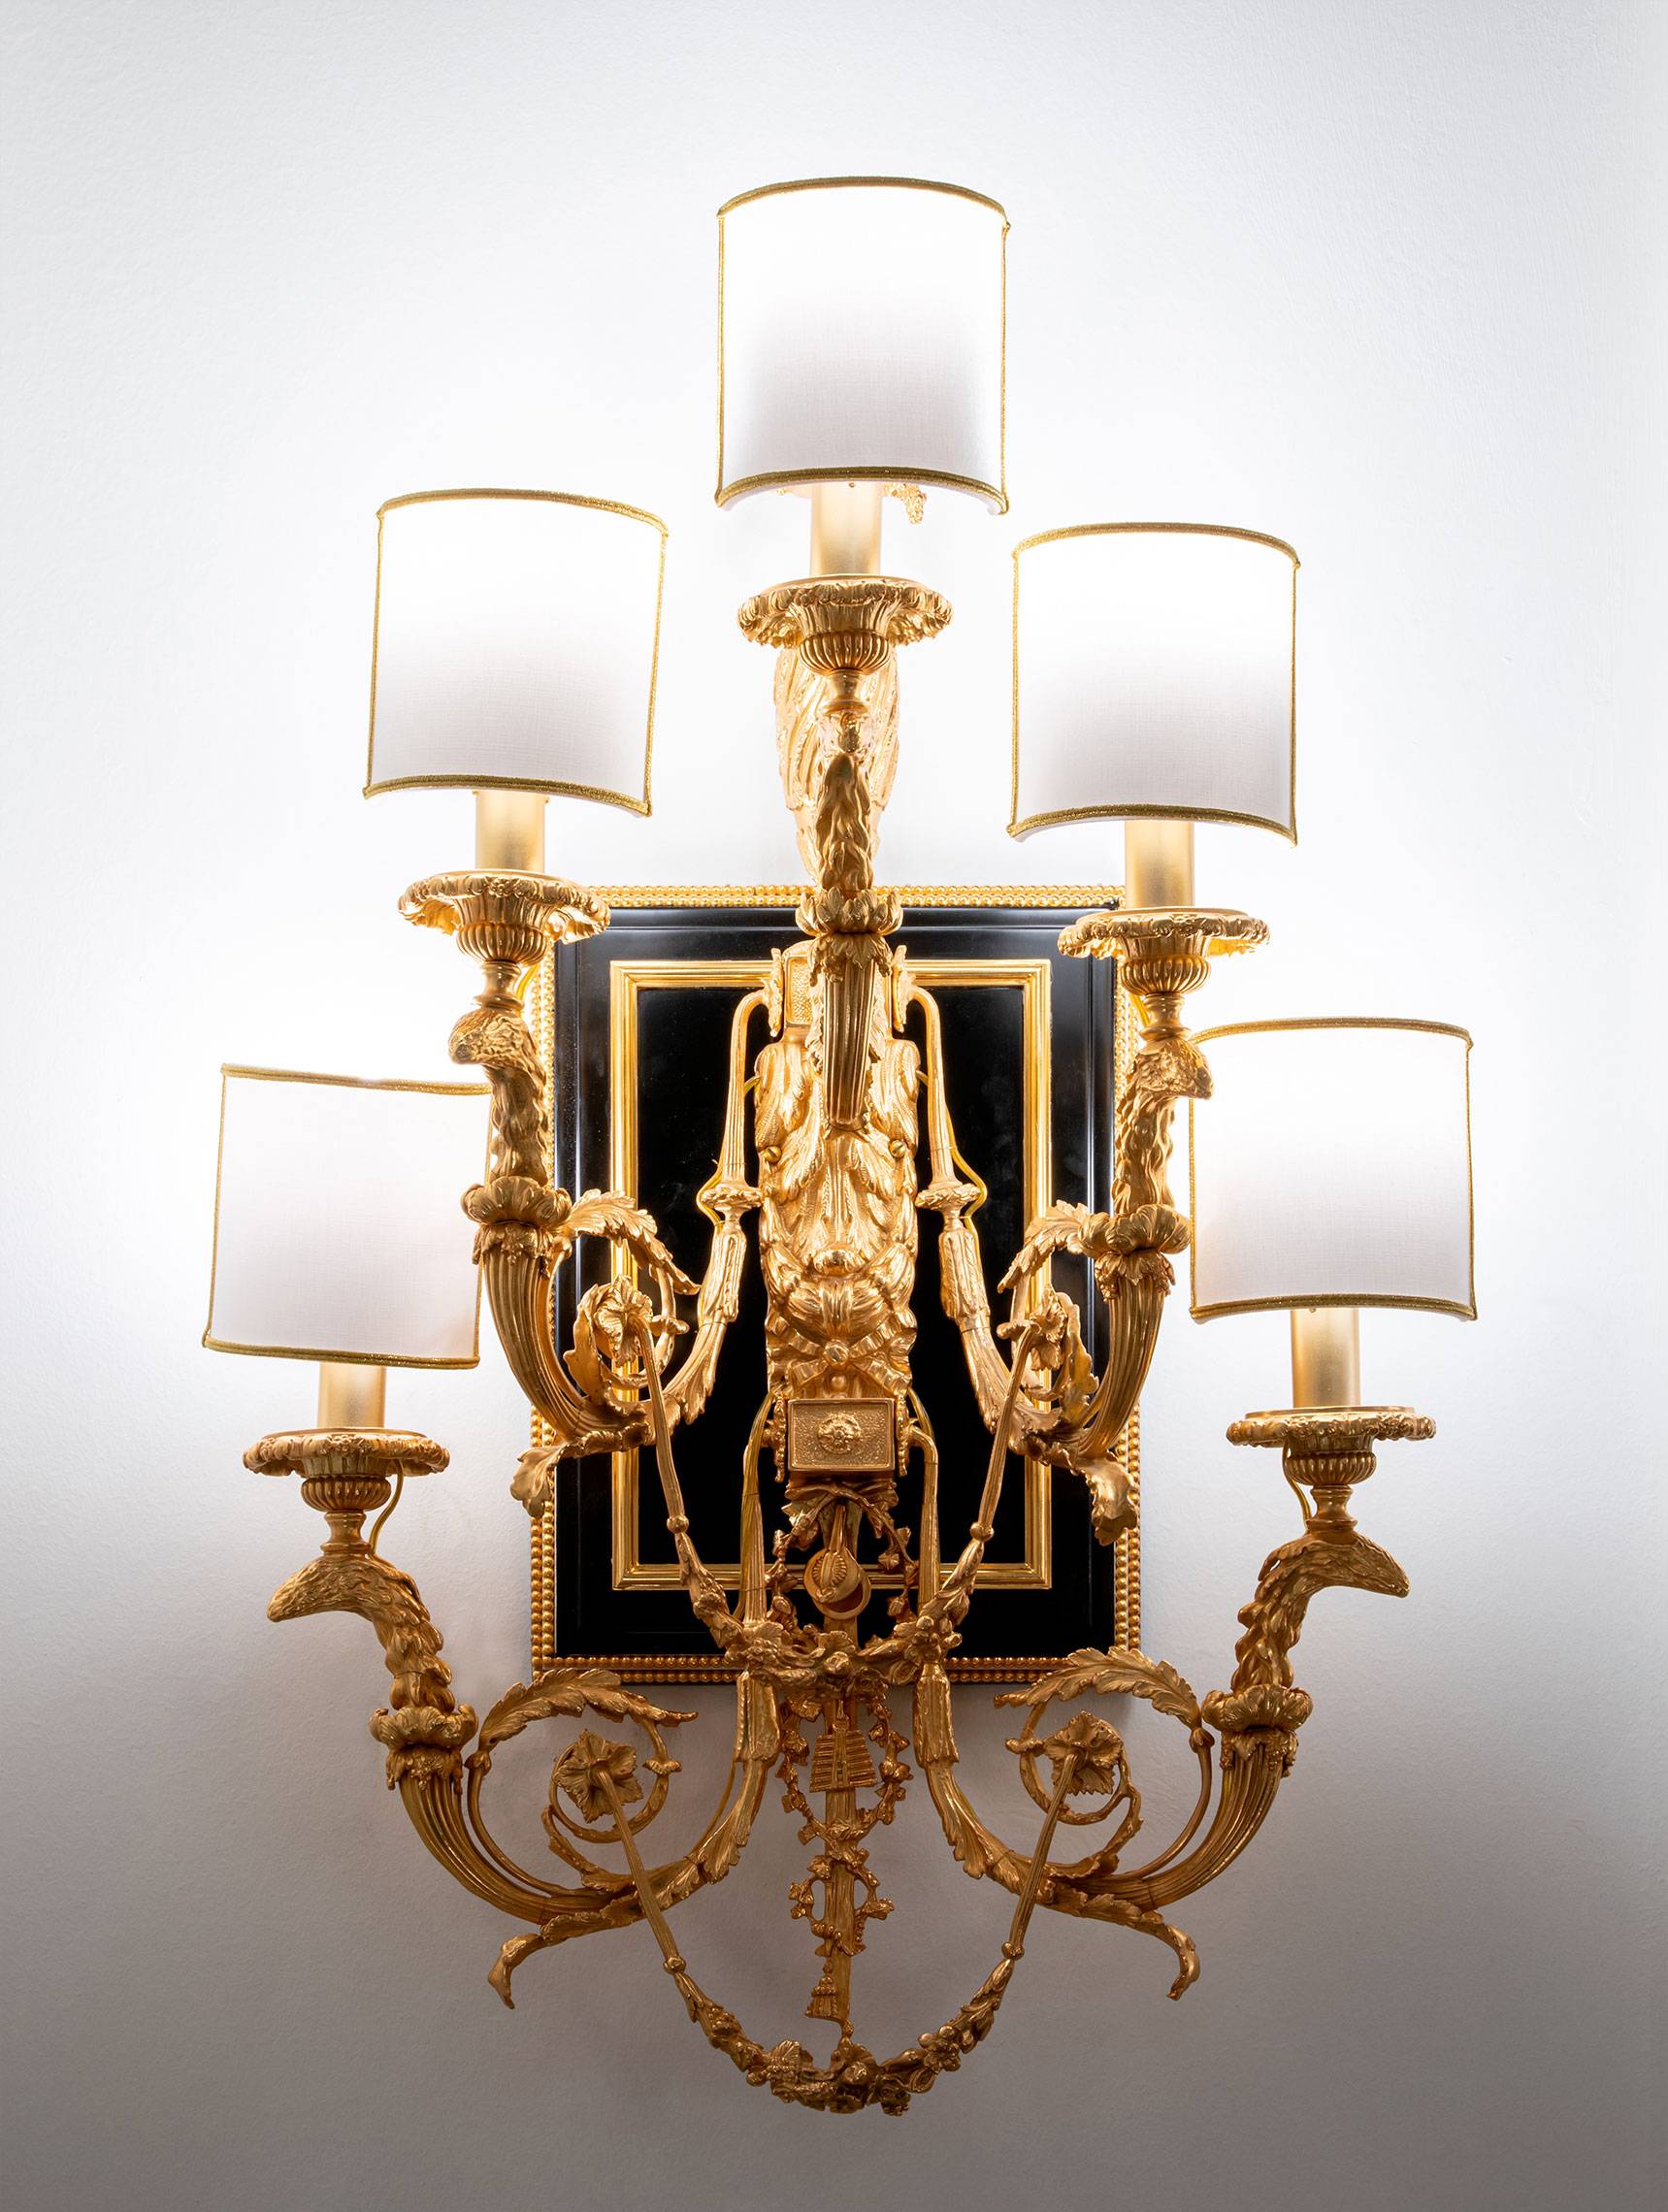 ART. 2306 - Illuminazione di lusso in stile classico made in Italy. Design di interni italiano C.G. Capelletti